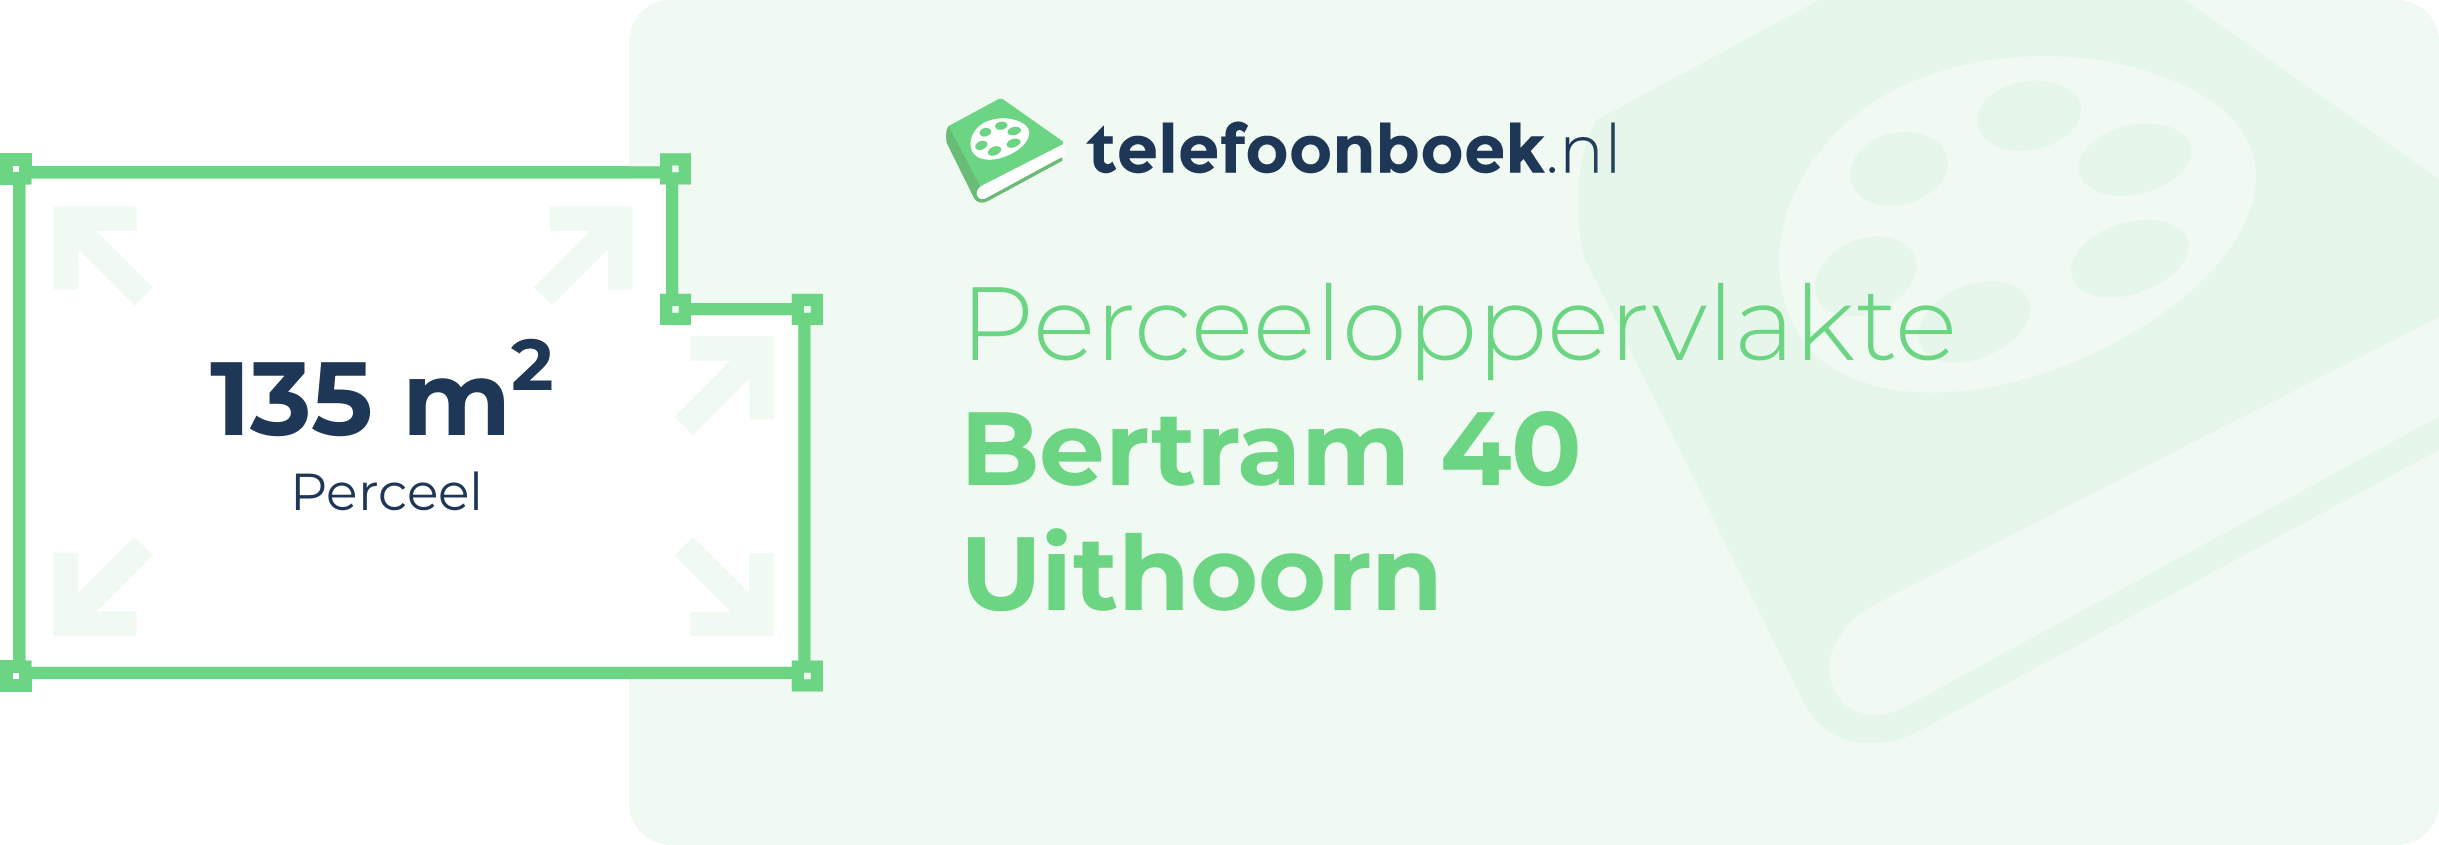 Perceeloppervlakte Bertram 40 Uithoorn